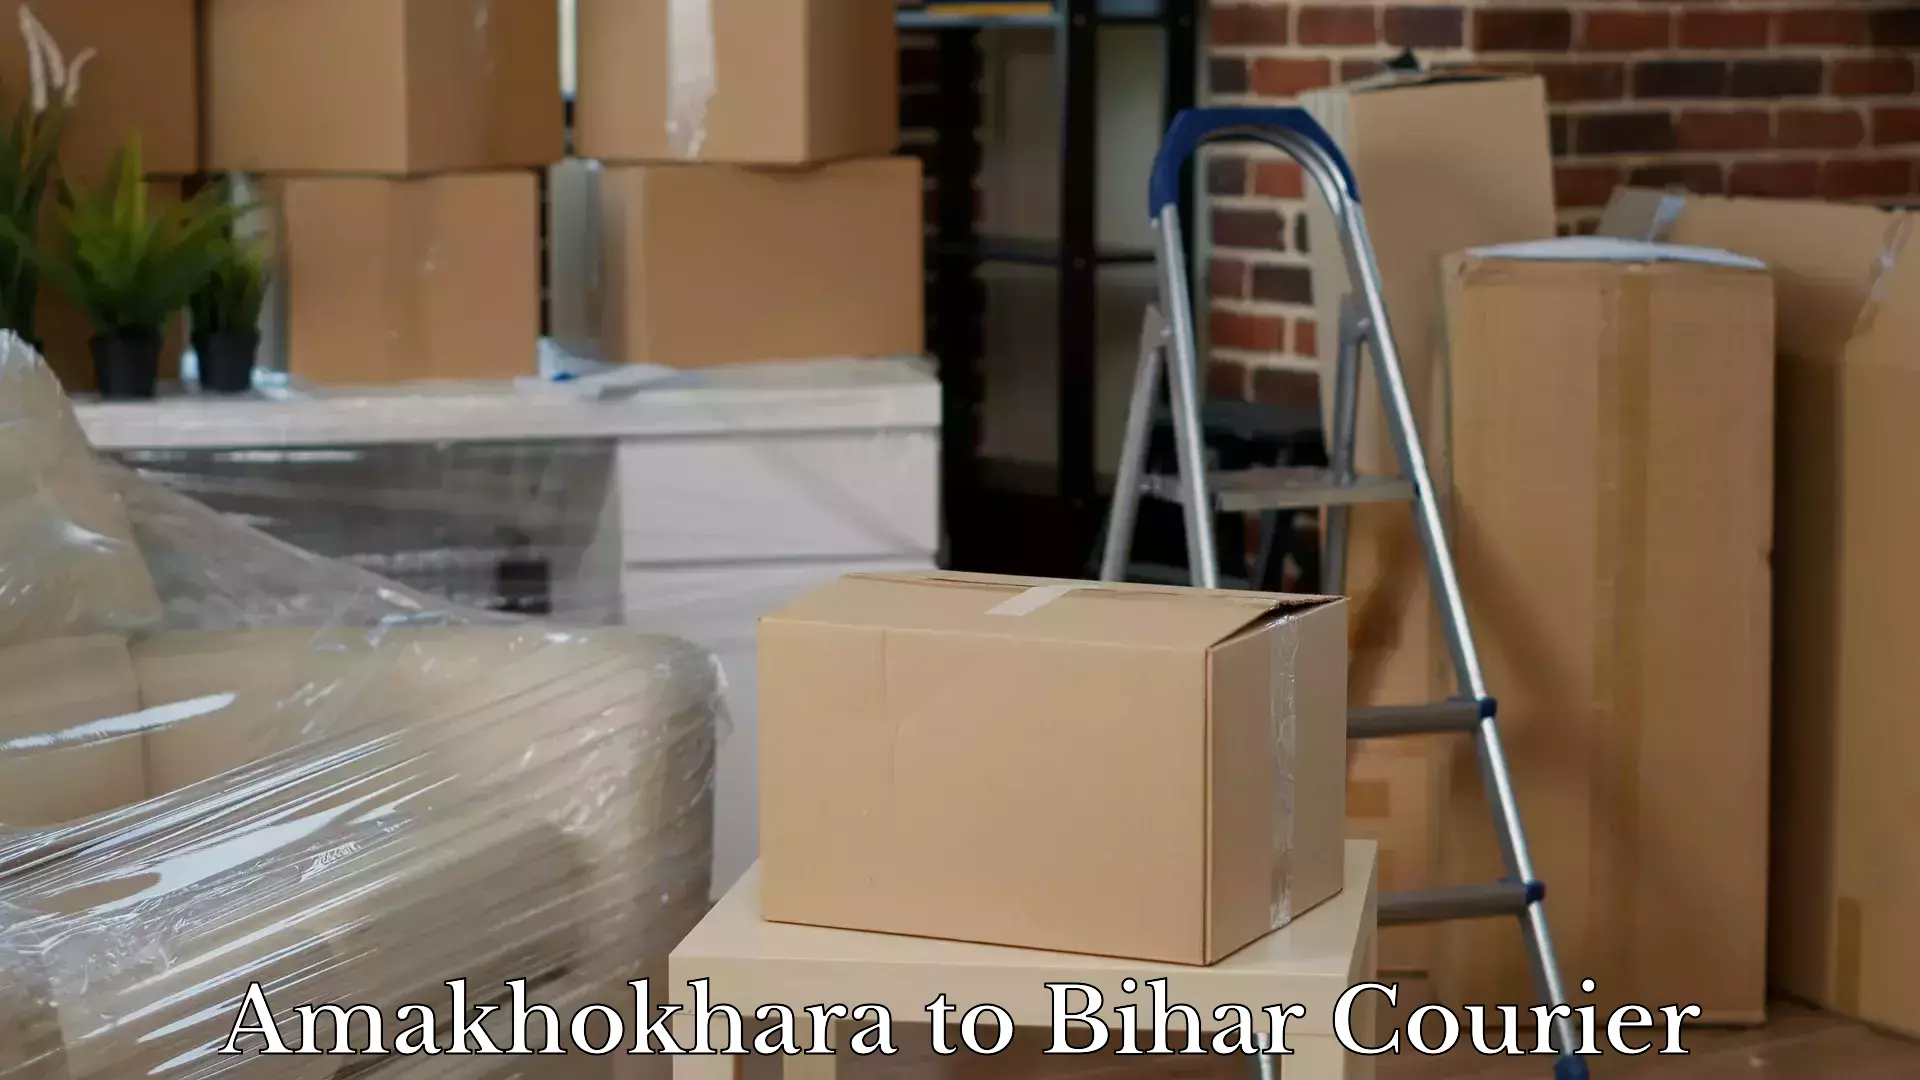 Luggage transport consulting Amakhokhara to Bihta